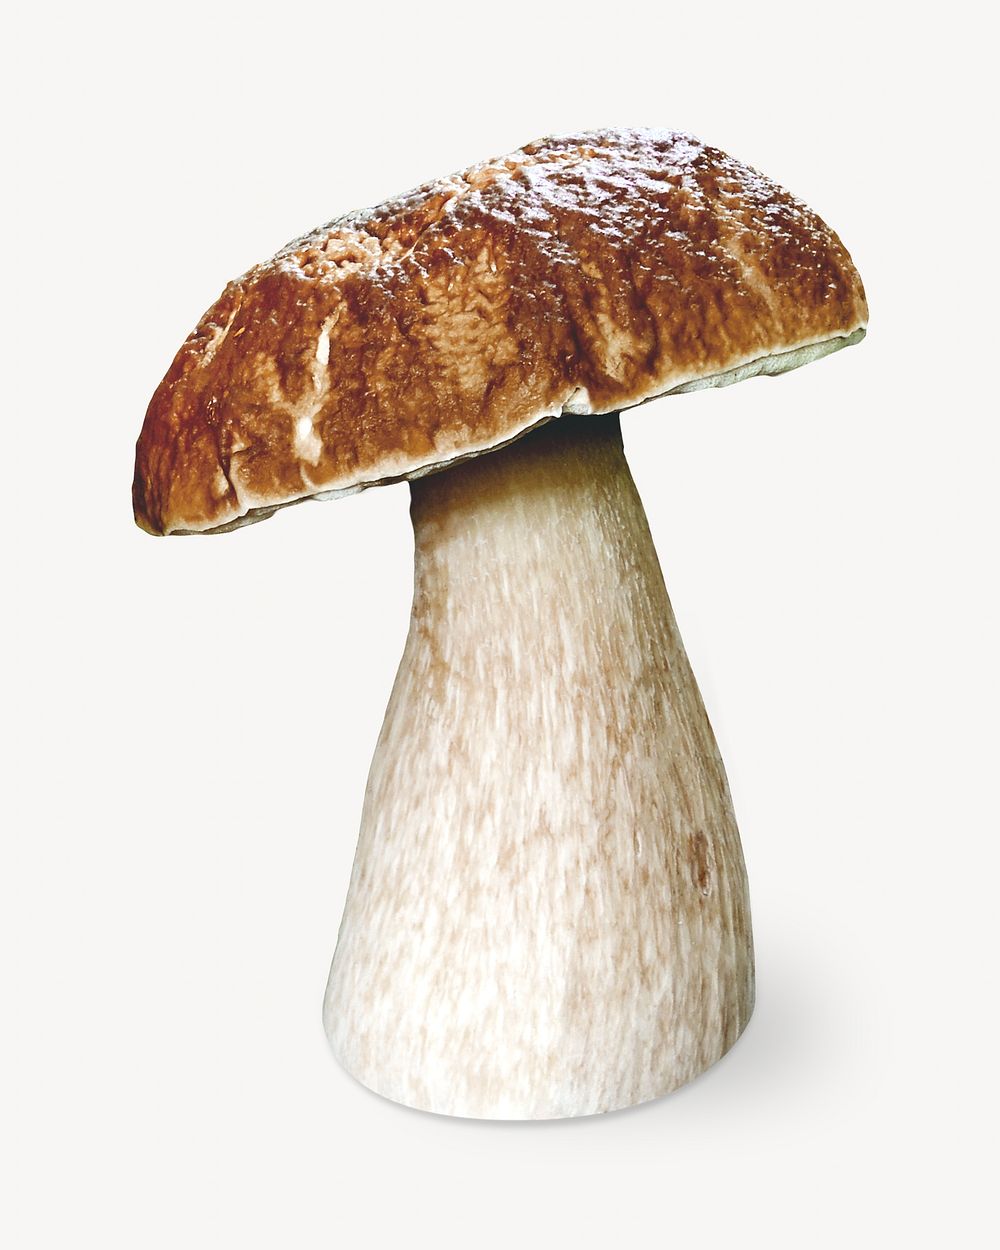 King Bolete mushroom isolated object on white